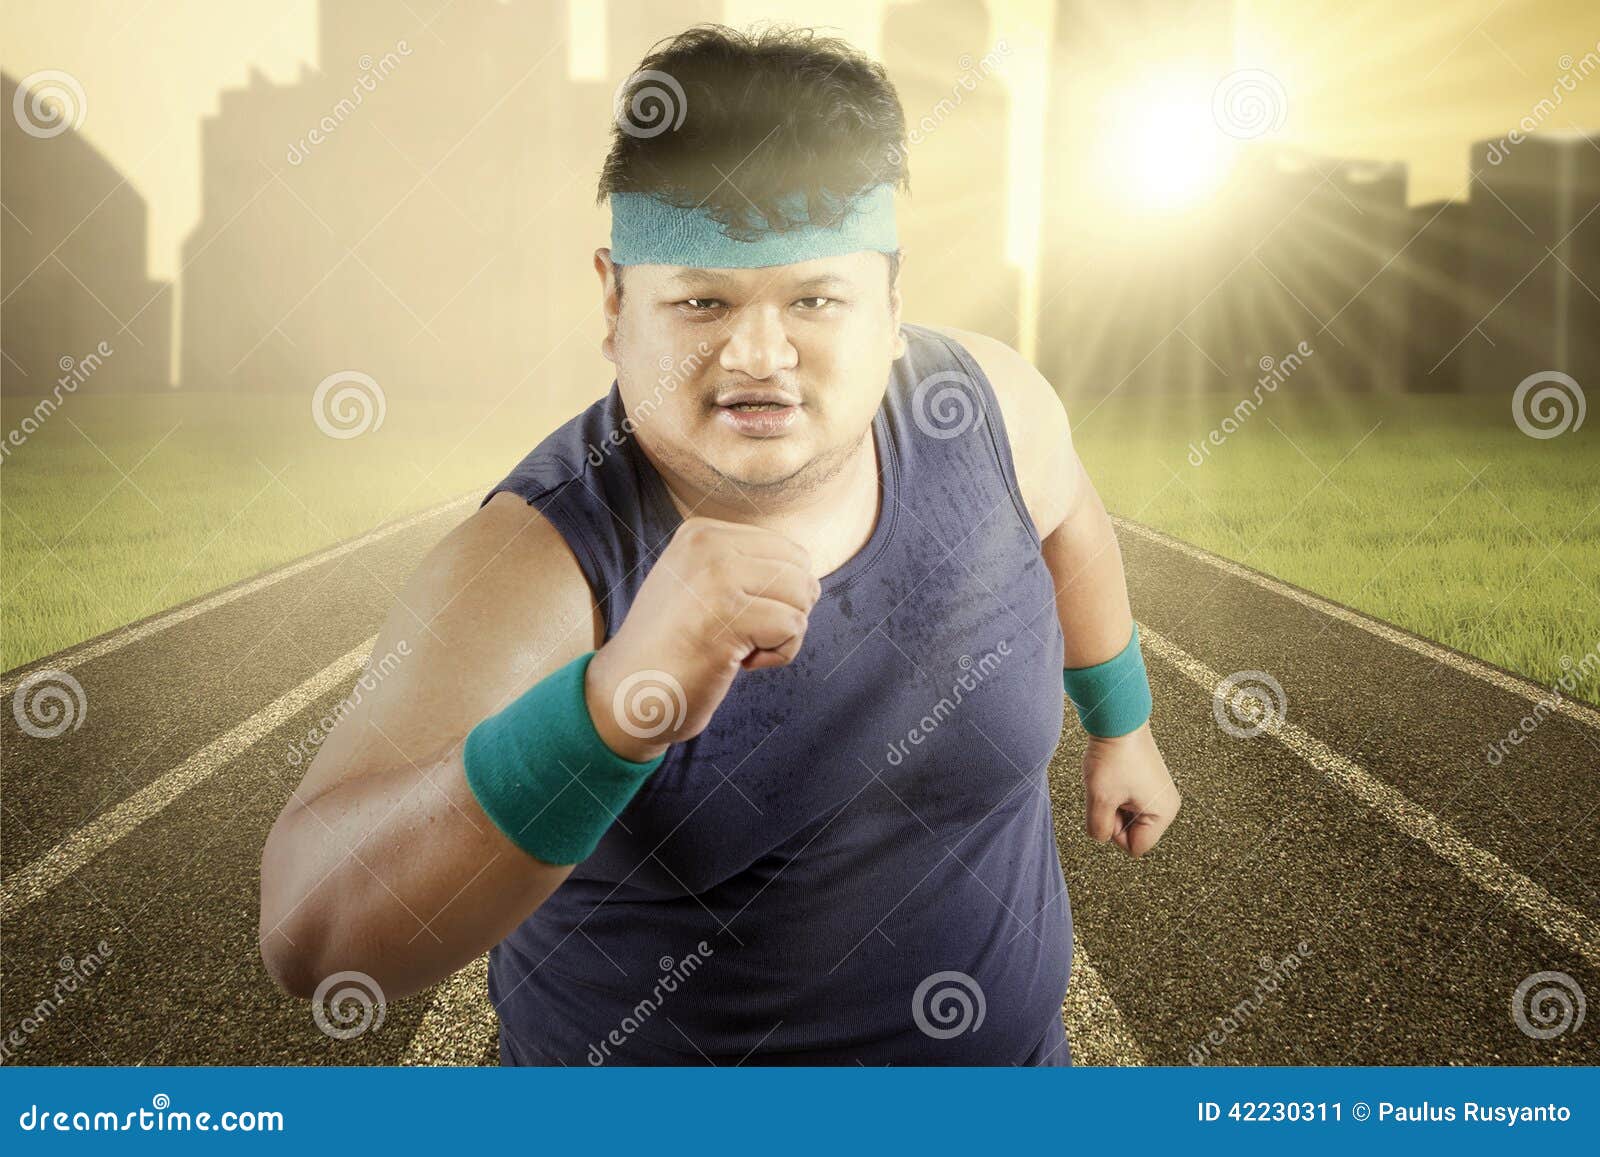 fat guy running shirtless